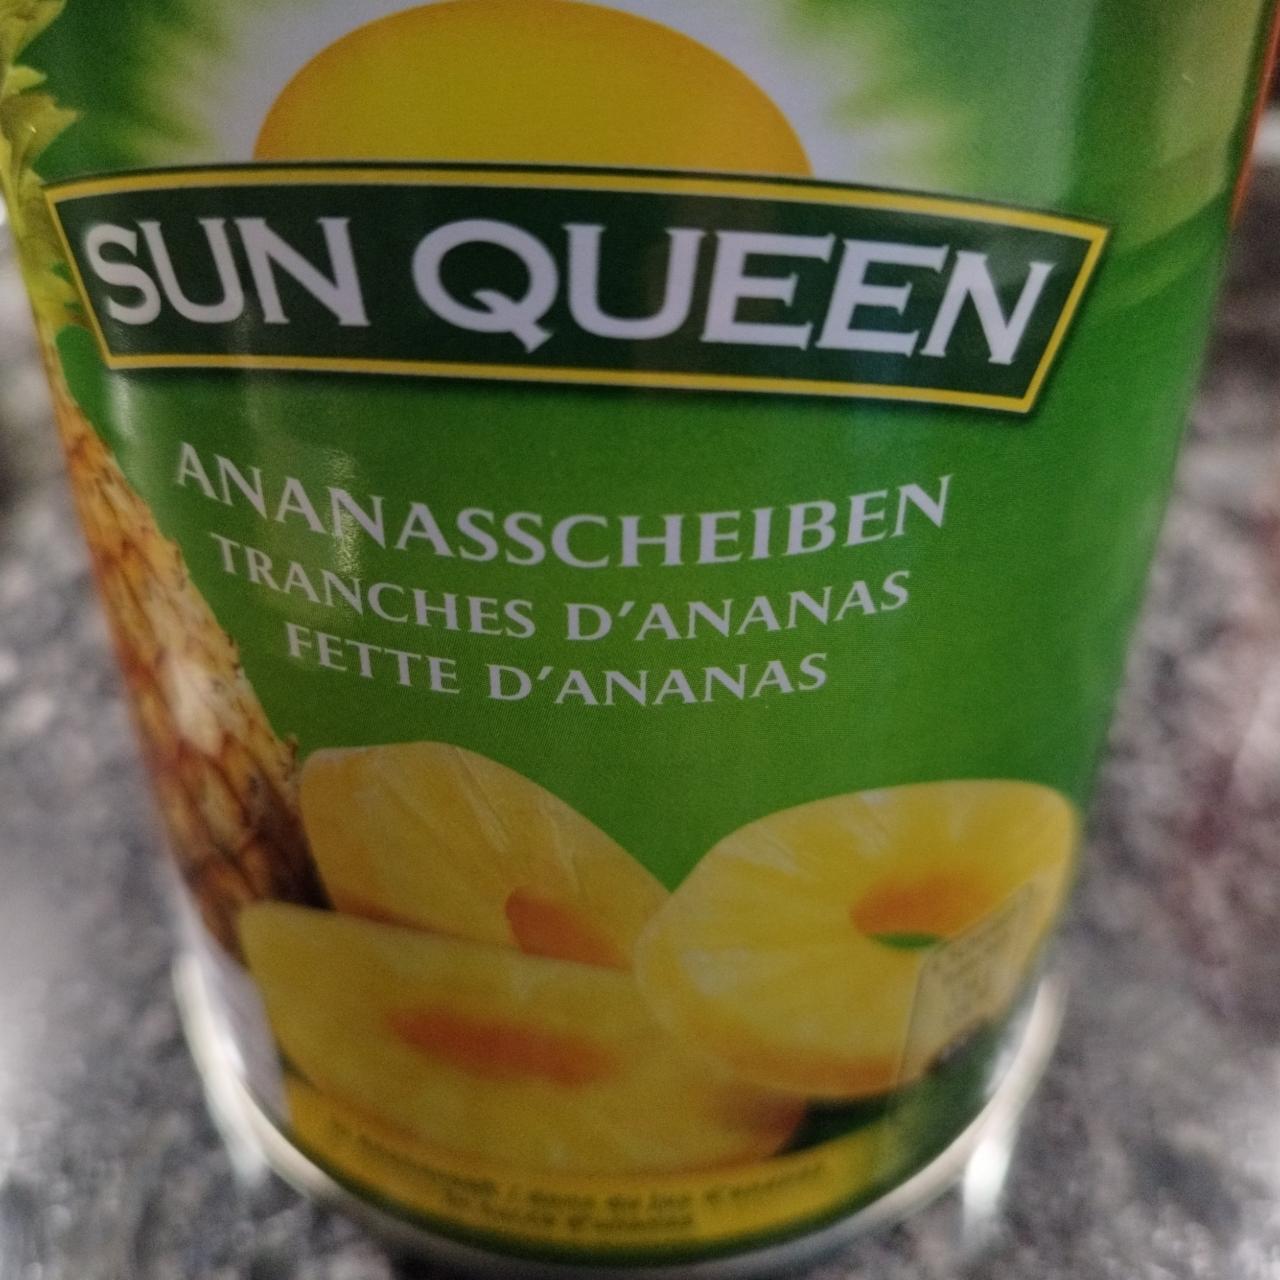 Fotografie - Ananasscheiben Sun Queen